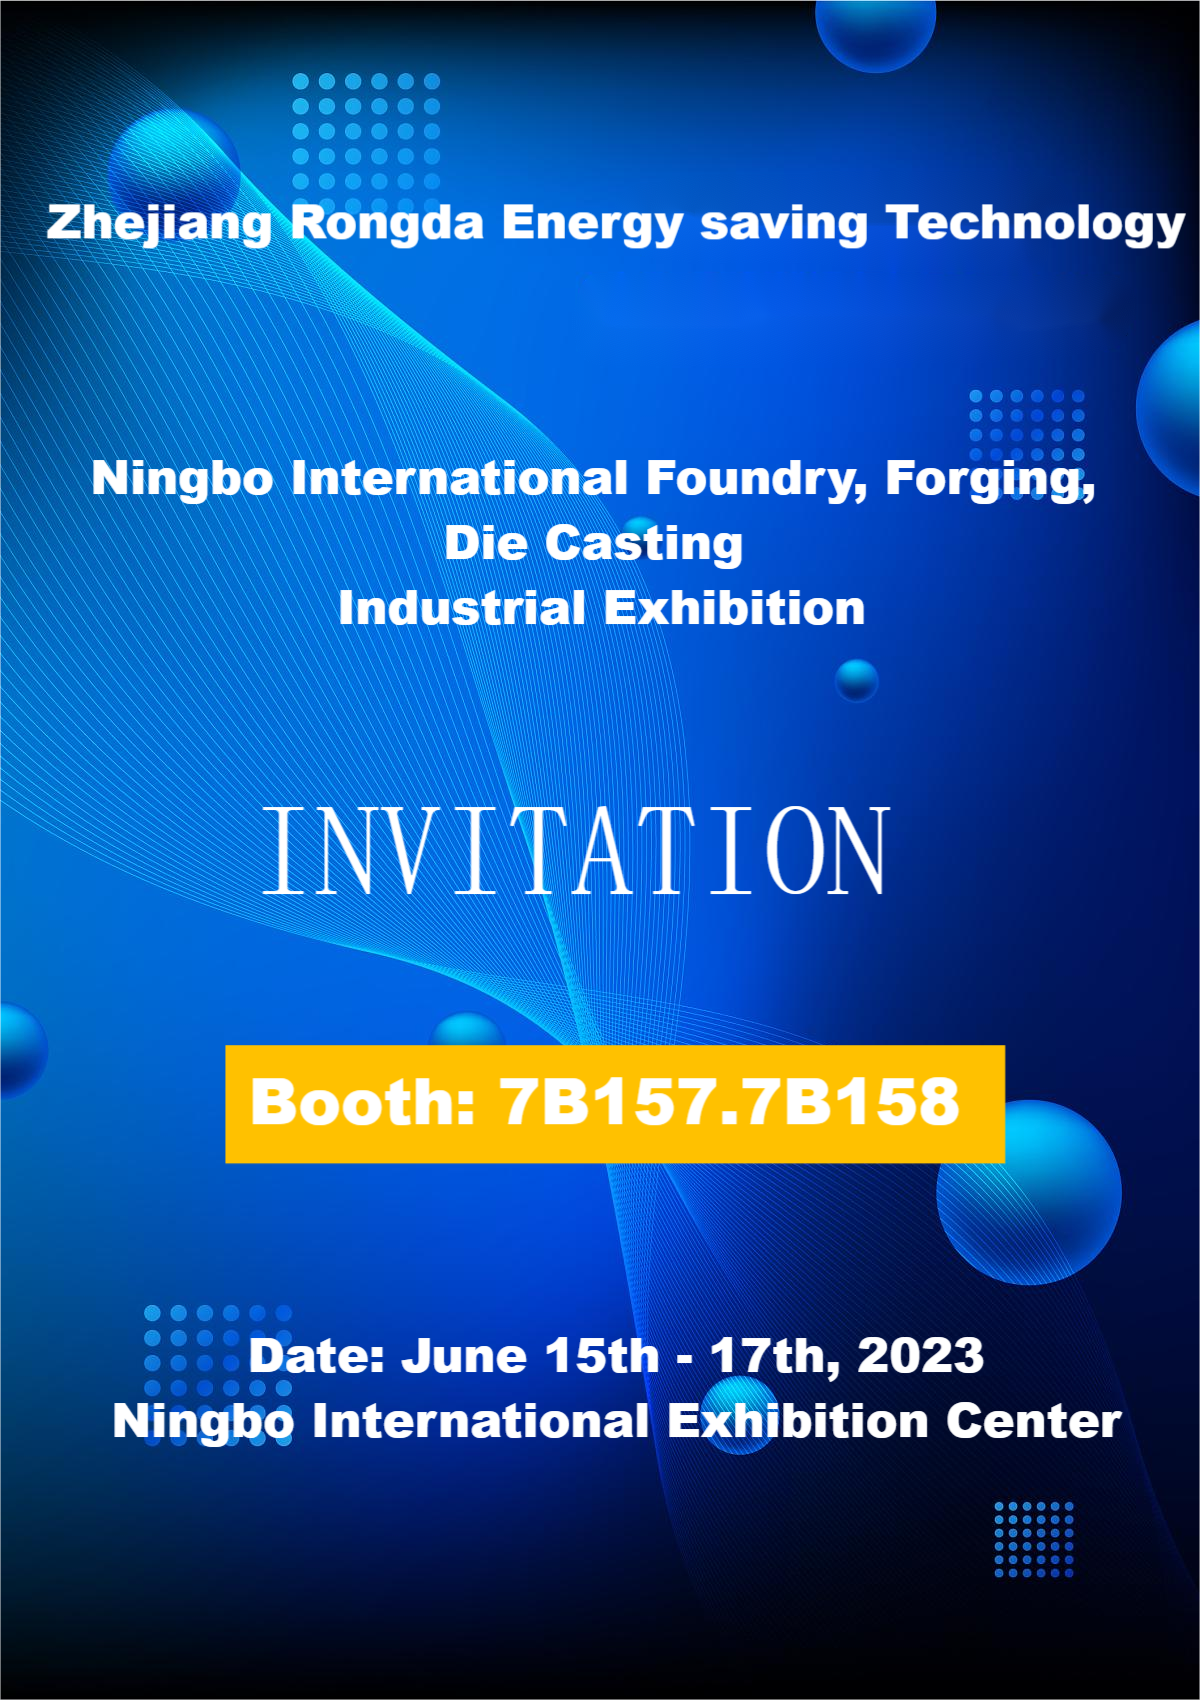 በ Ningbo International Foundry፣ Forging እና Die Casting Industrial Exhibition ላይ ይቀላቀሉን!